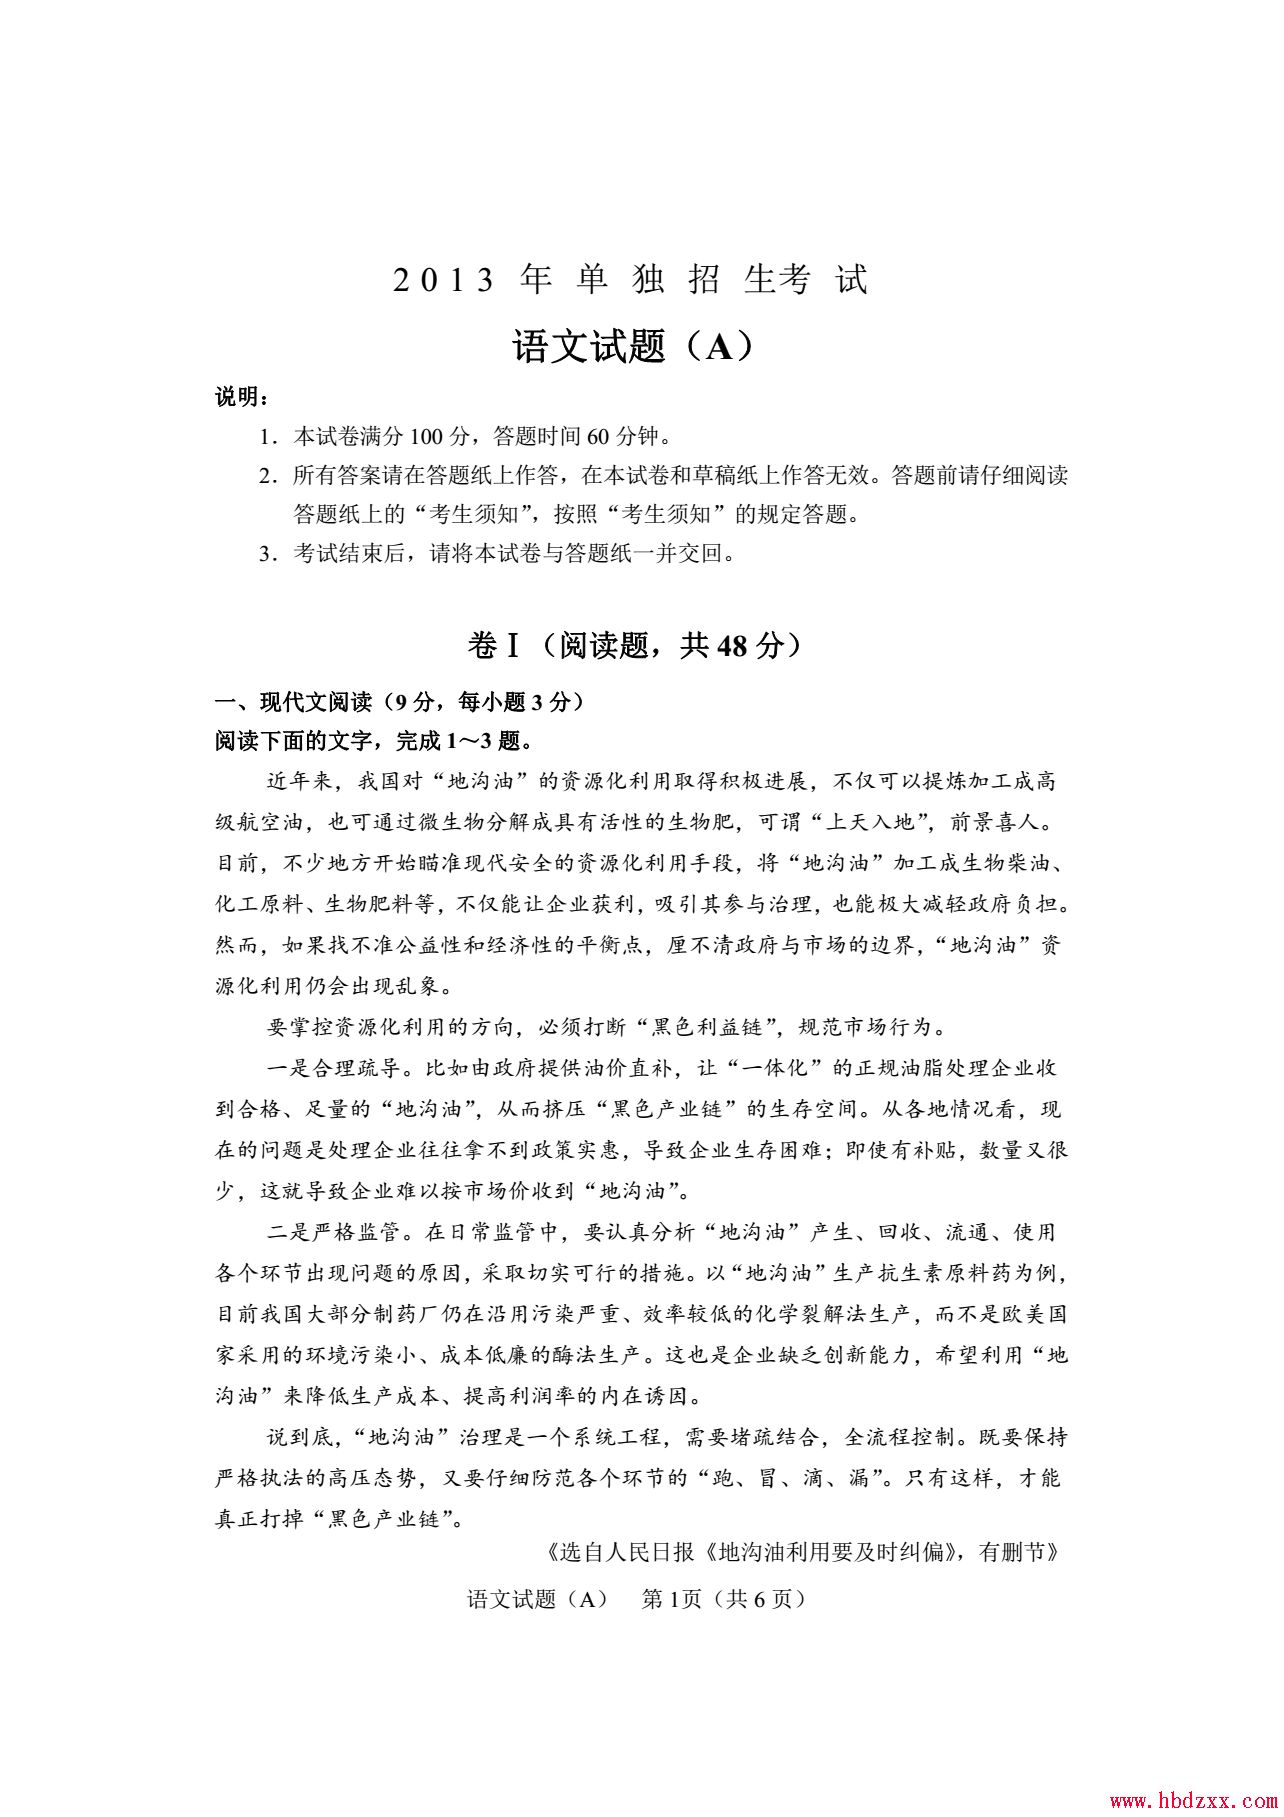 石家庄铁路职业技术学院2013年语文单招试题 图1